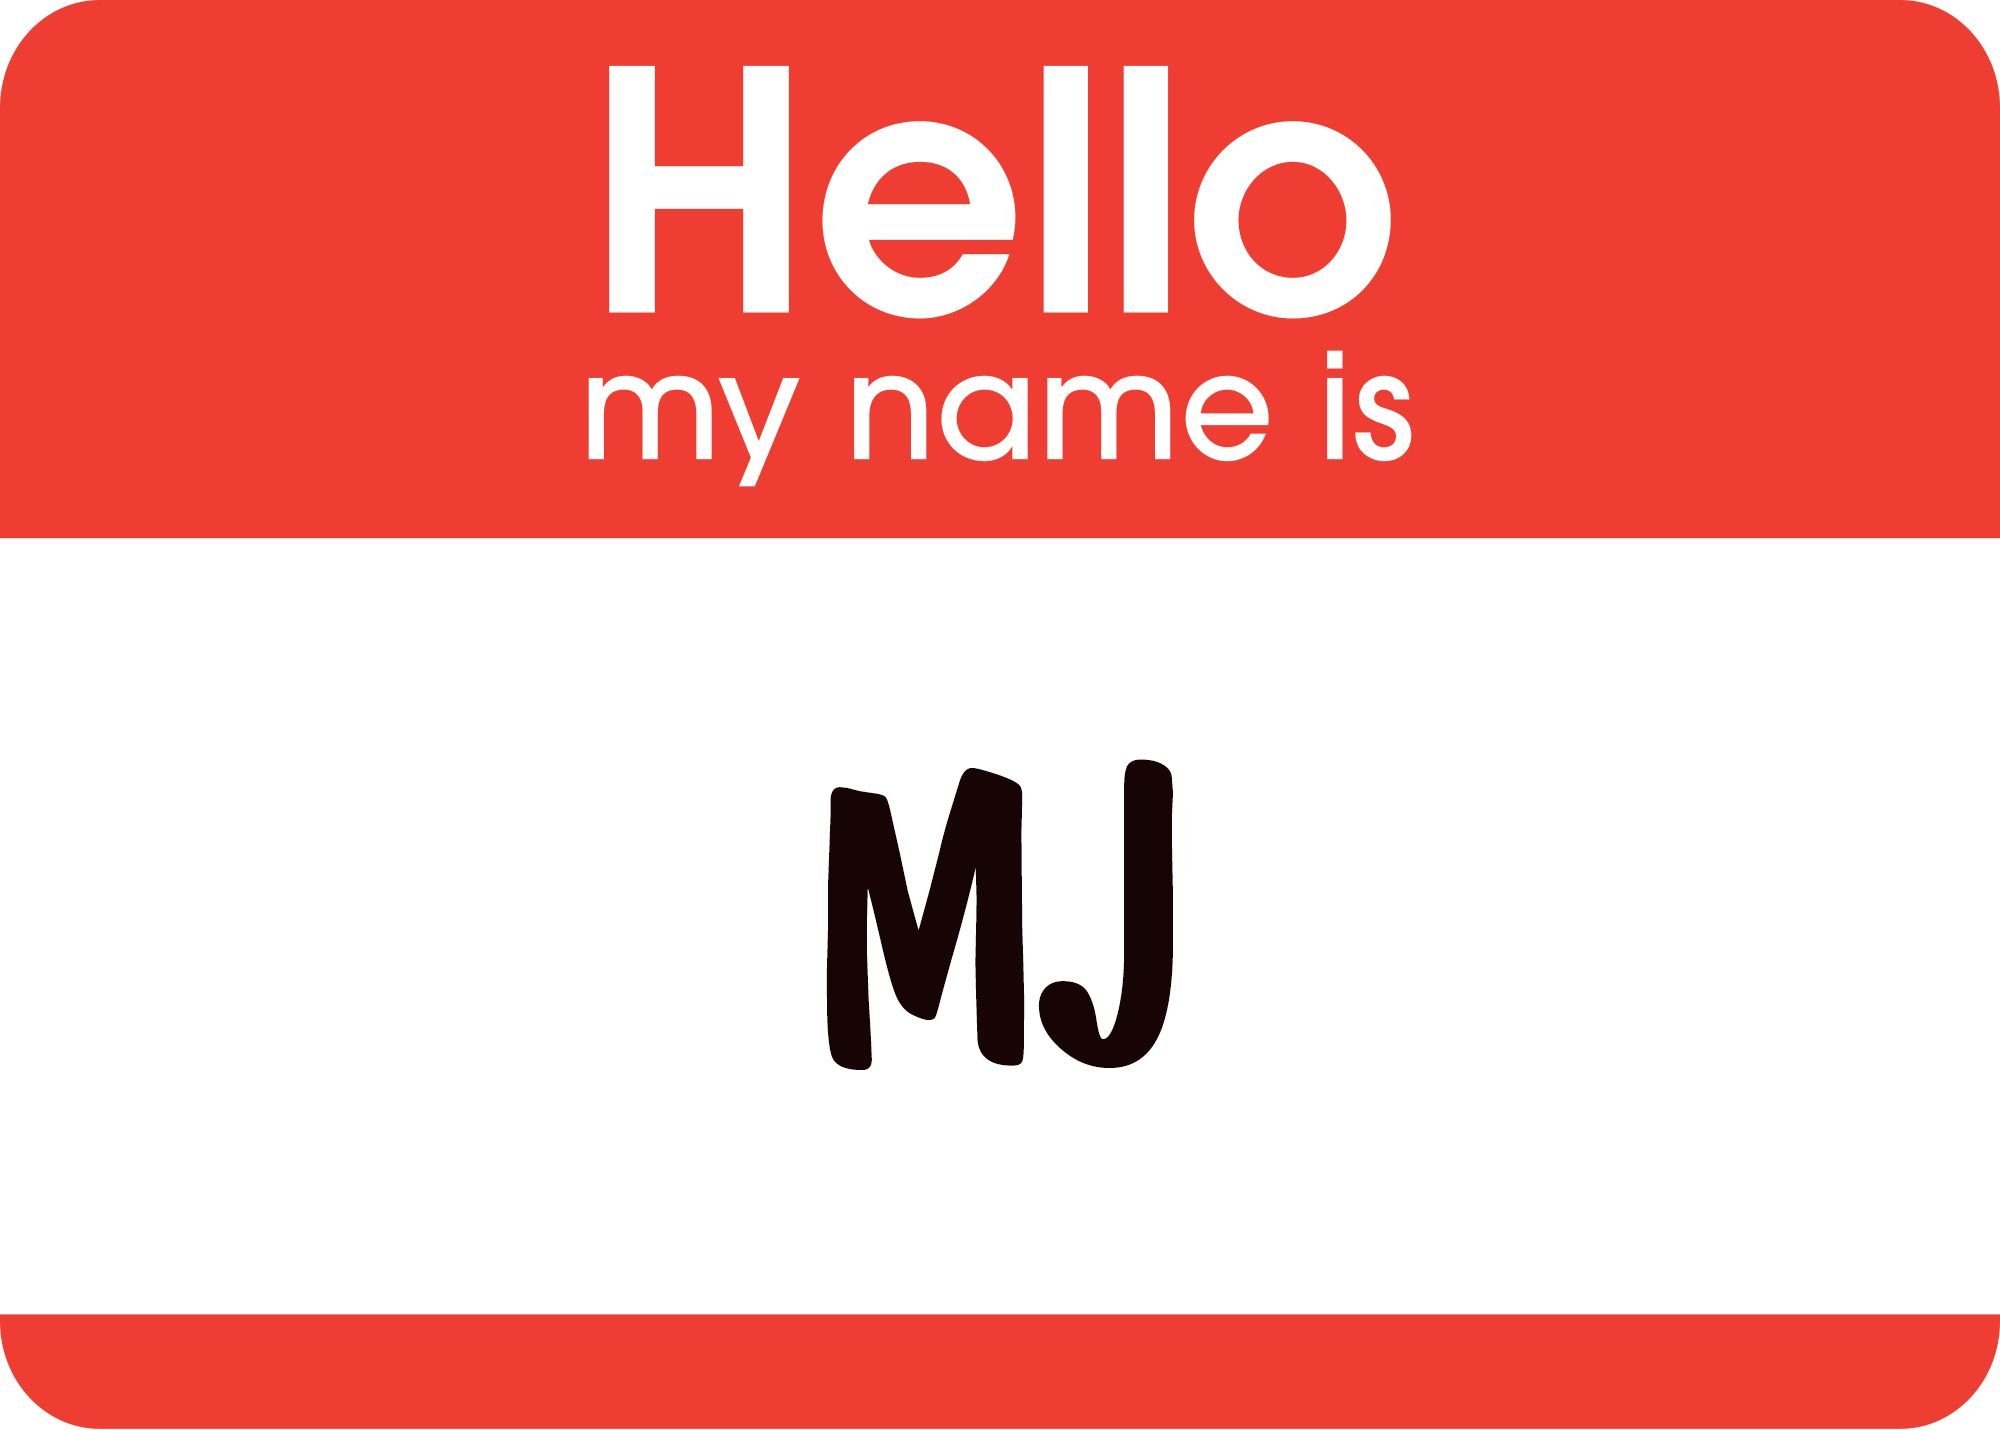 Хеллоу май нейм из. Табличка hello my name is. Стикеры hello my name is. Наклейки hello my name. Карточки my name is.